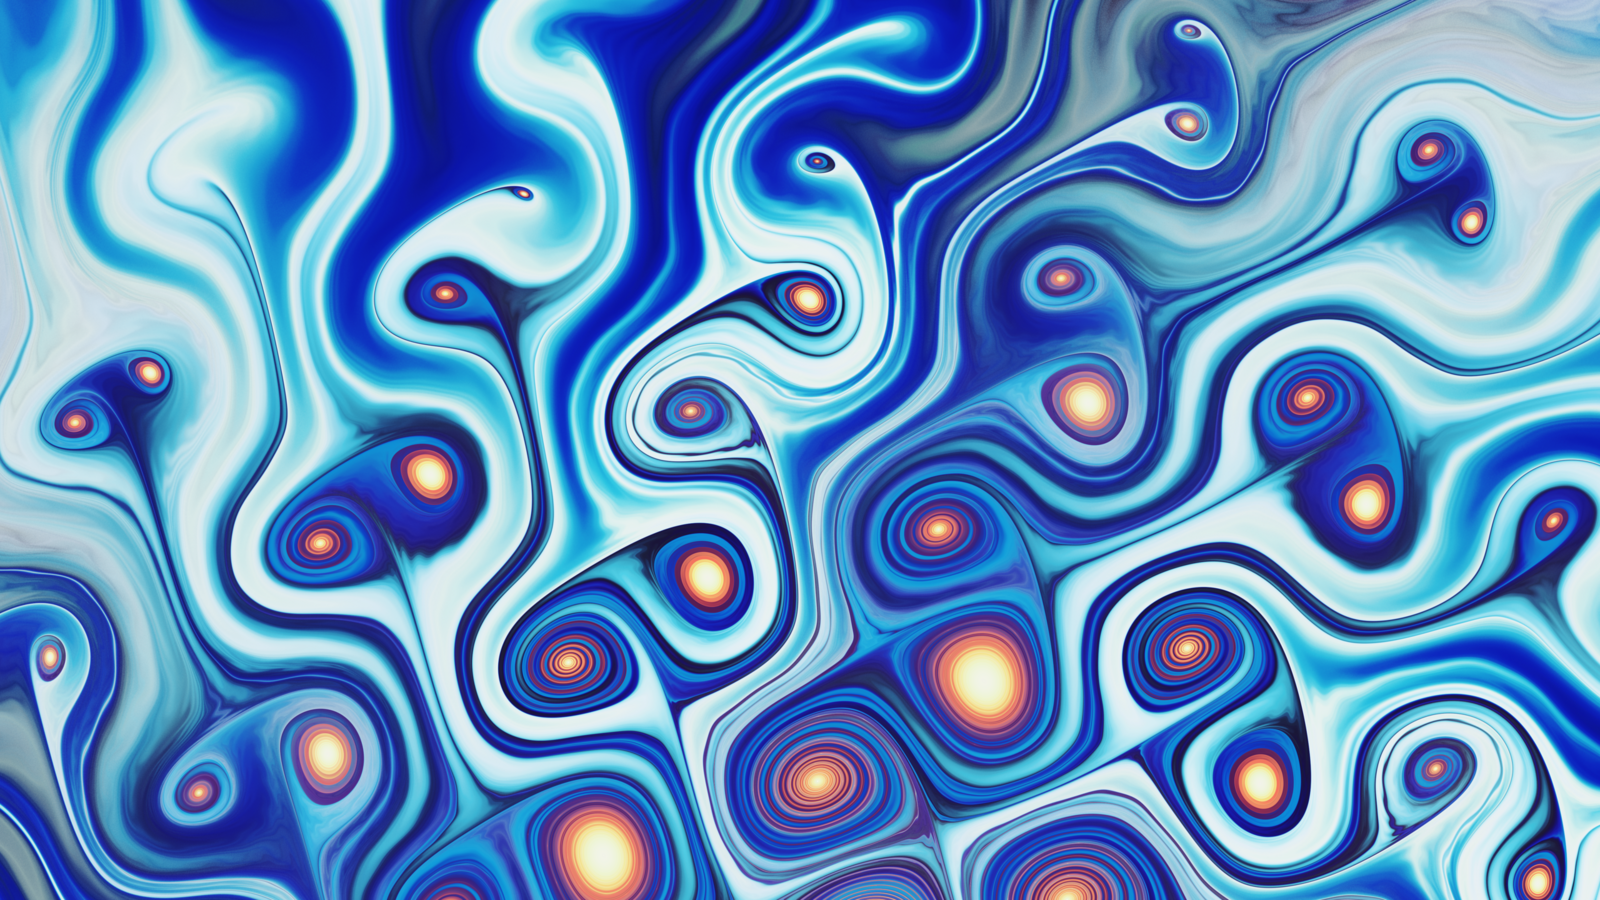 Wallpapers pattern blue swirly on the desktop